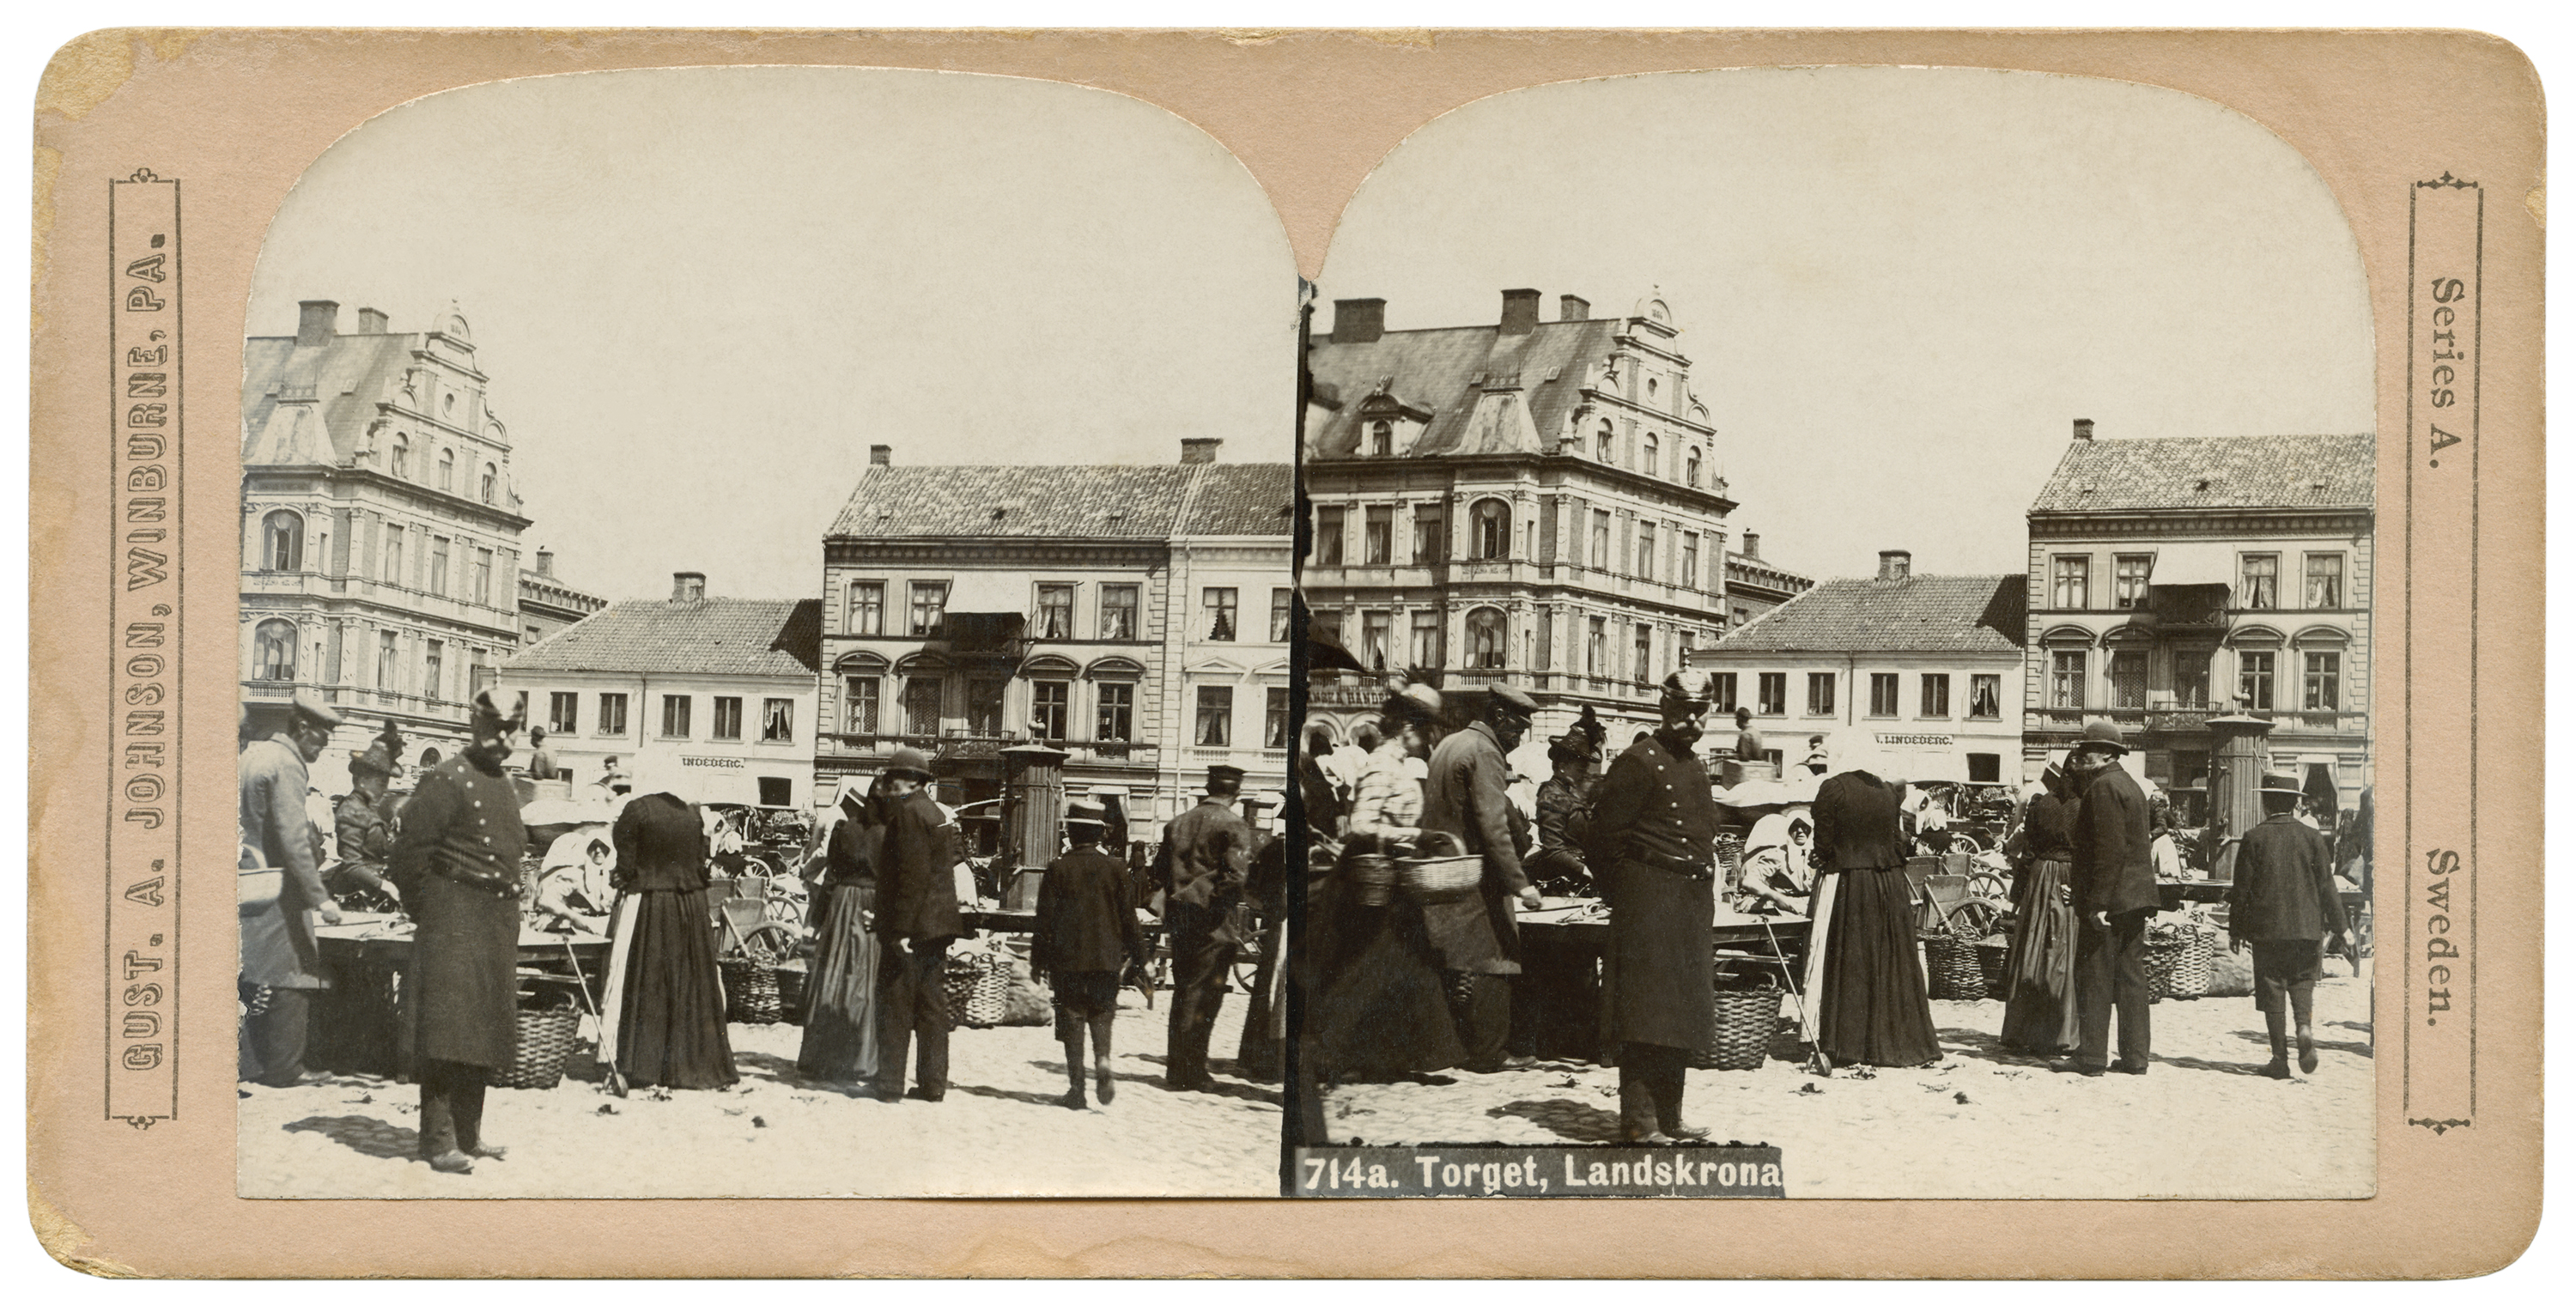 Market at a square in Landskrona, Sweden. Photo: Gustav Adolph Johnson, 1901